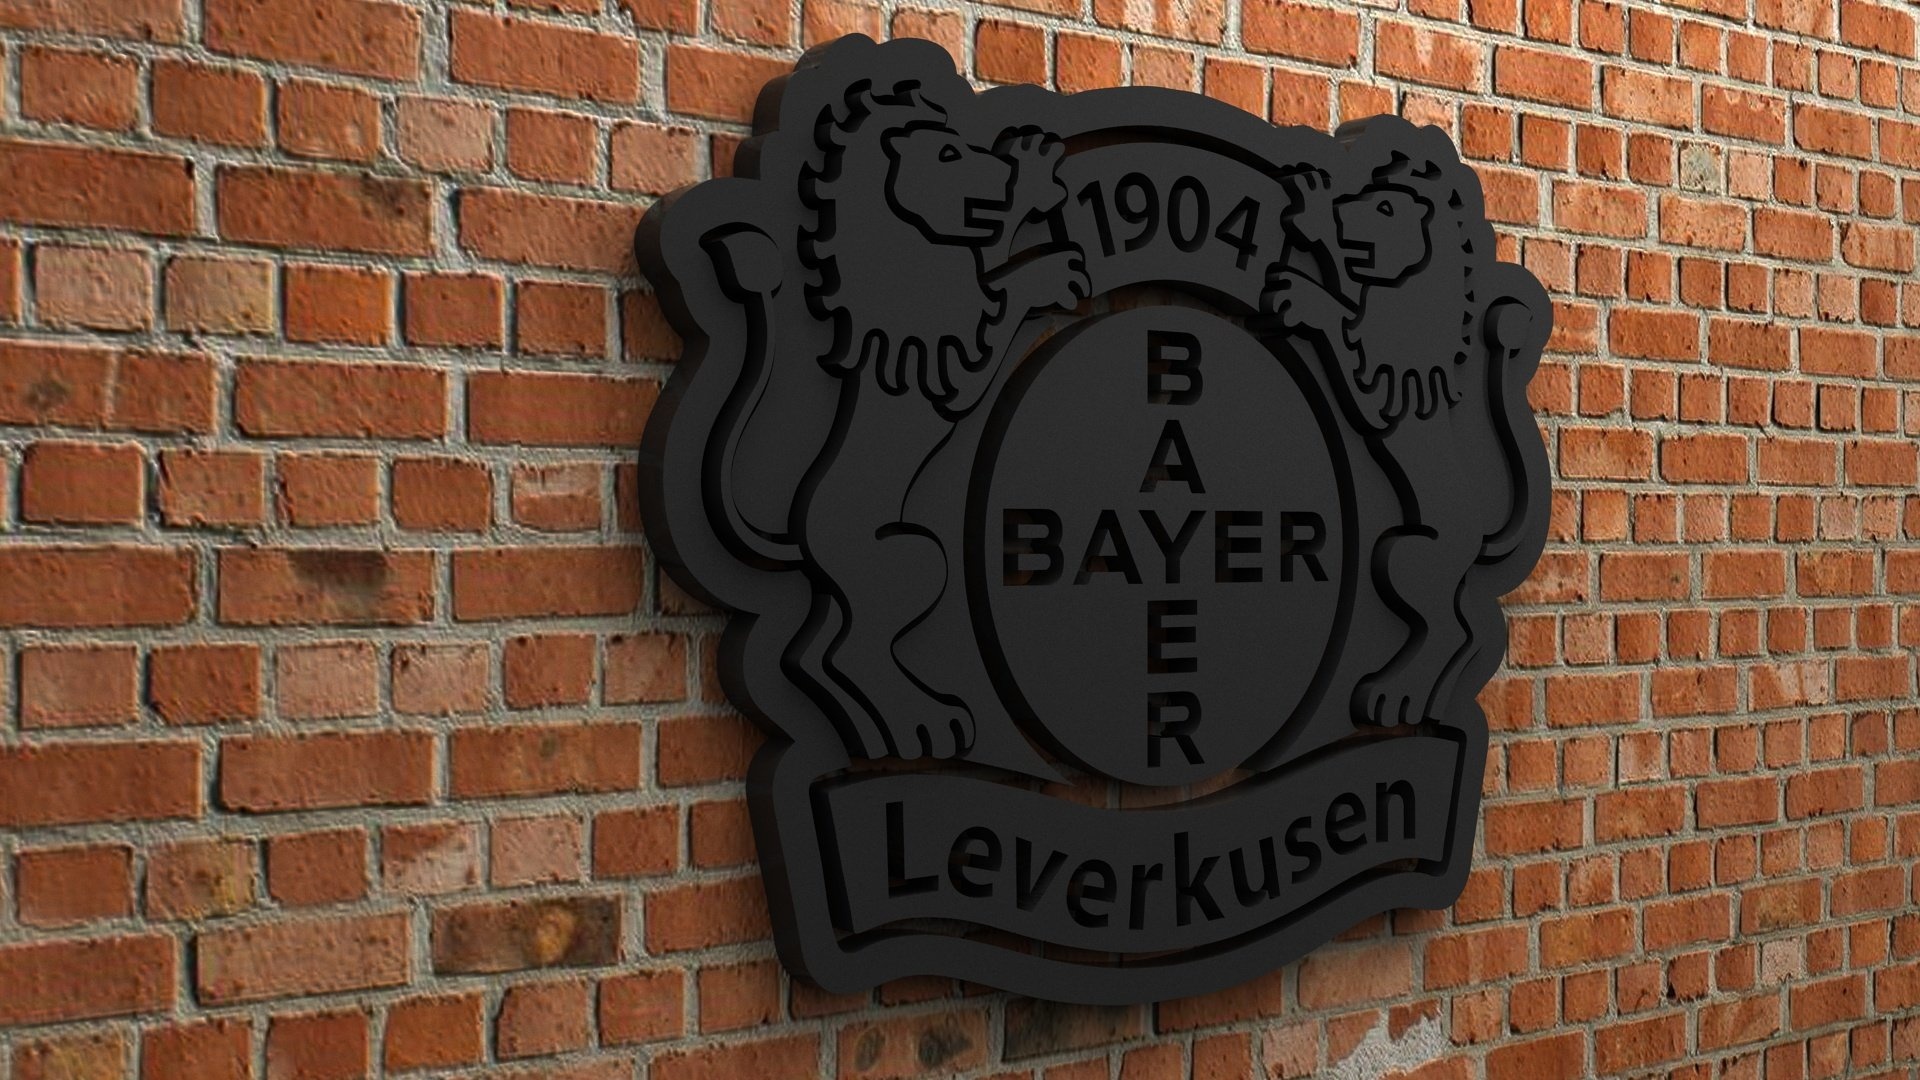 Bayer 04 Leverkusen, Logo design, 3D printable, High-quality model, 1920x1080 Full HD Desktop